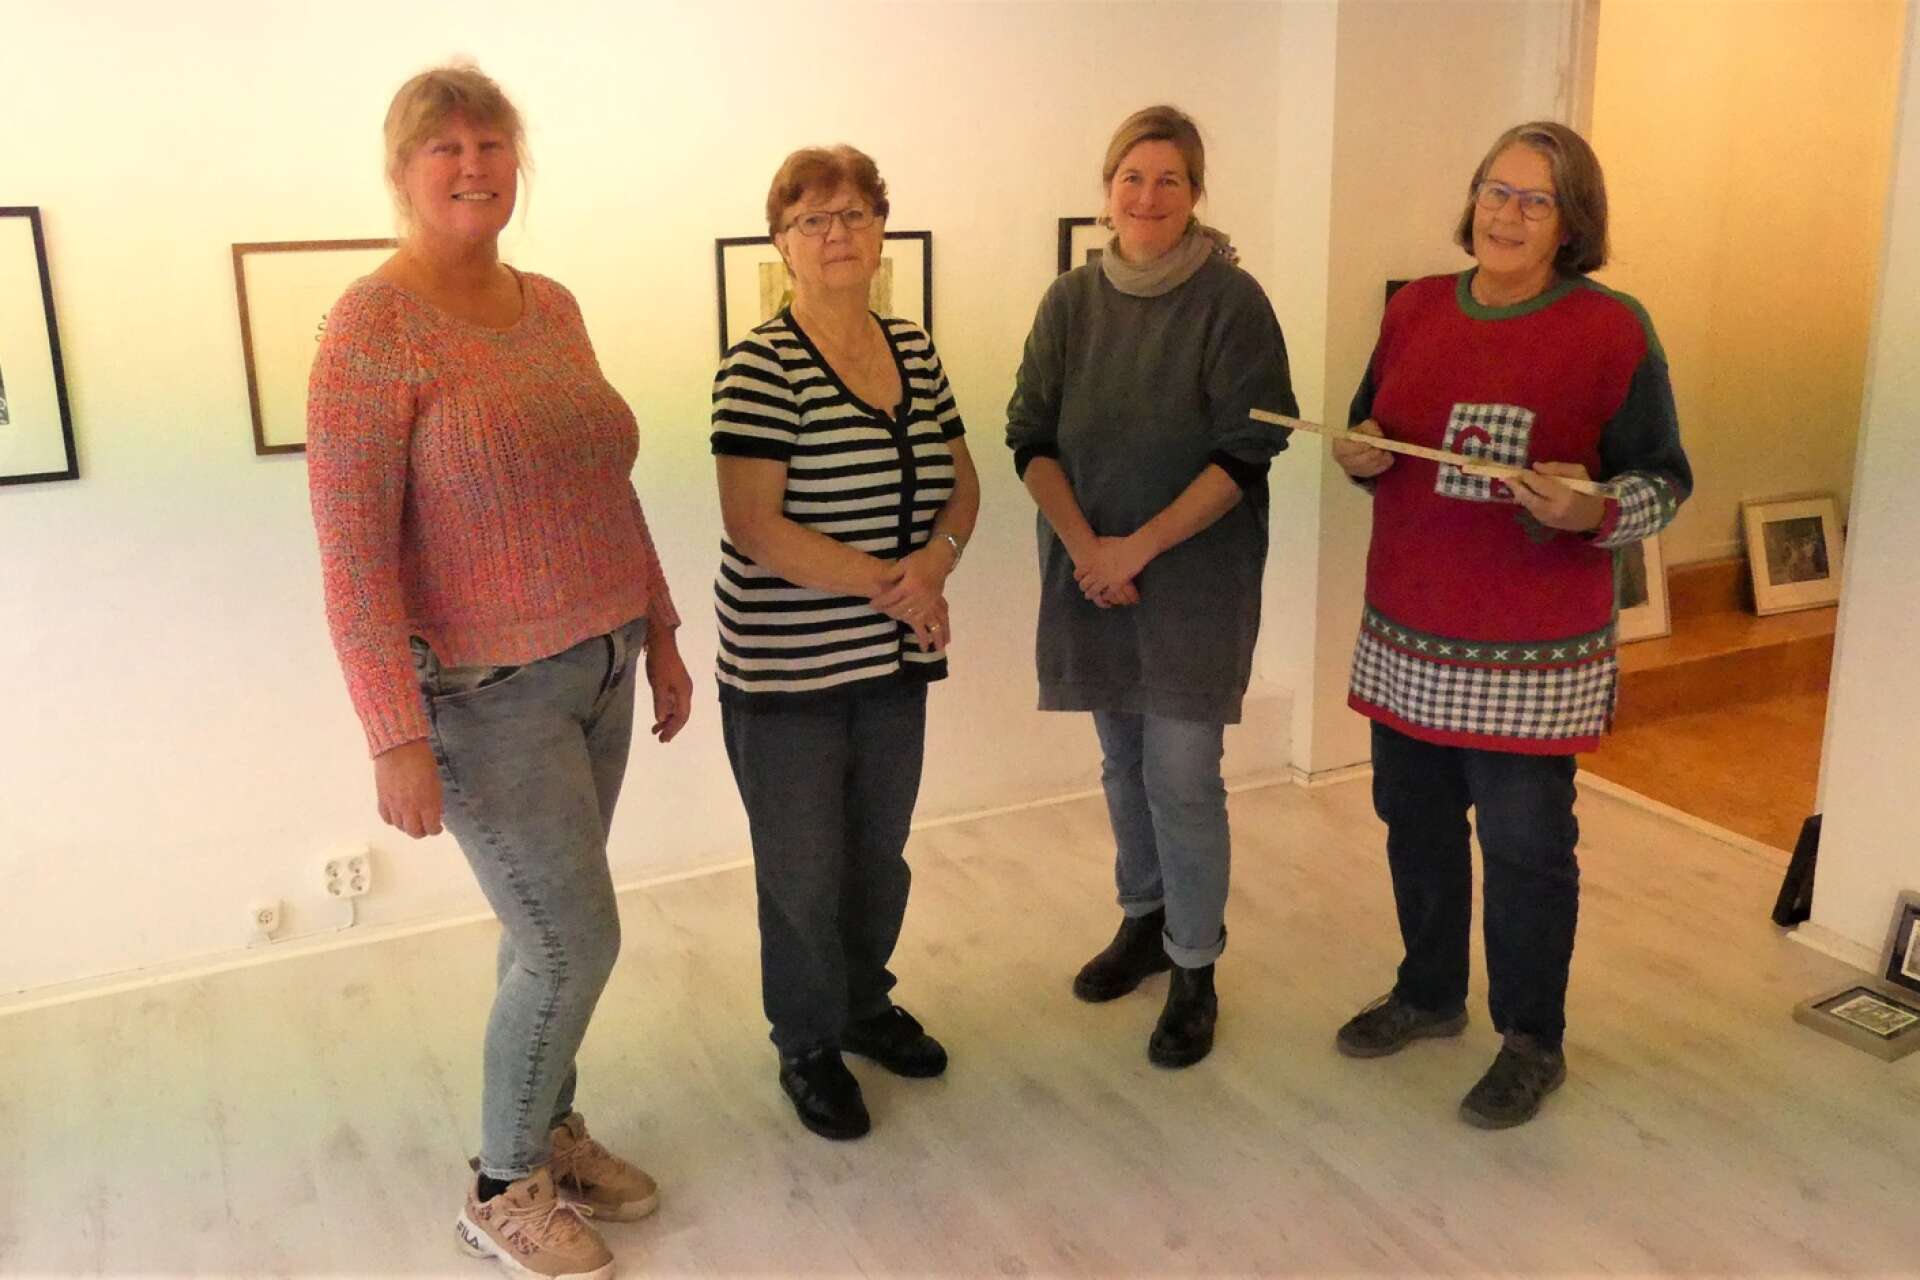 Utställningen i Galleri 2 med Konstgrafiska Verkstaden Dalsland har vernissage på lördag. På bilden ses fyra av de medverkande, från vänster Carina Svärd, Marianne Wenneberg, Tanja Mueller och Marianne Westerberg Edgren.